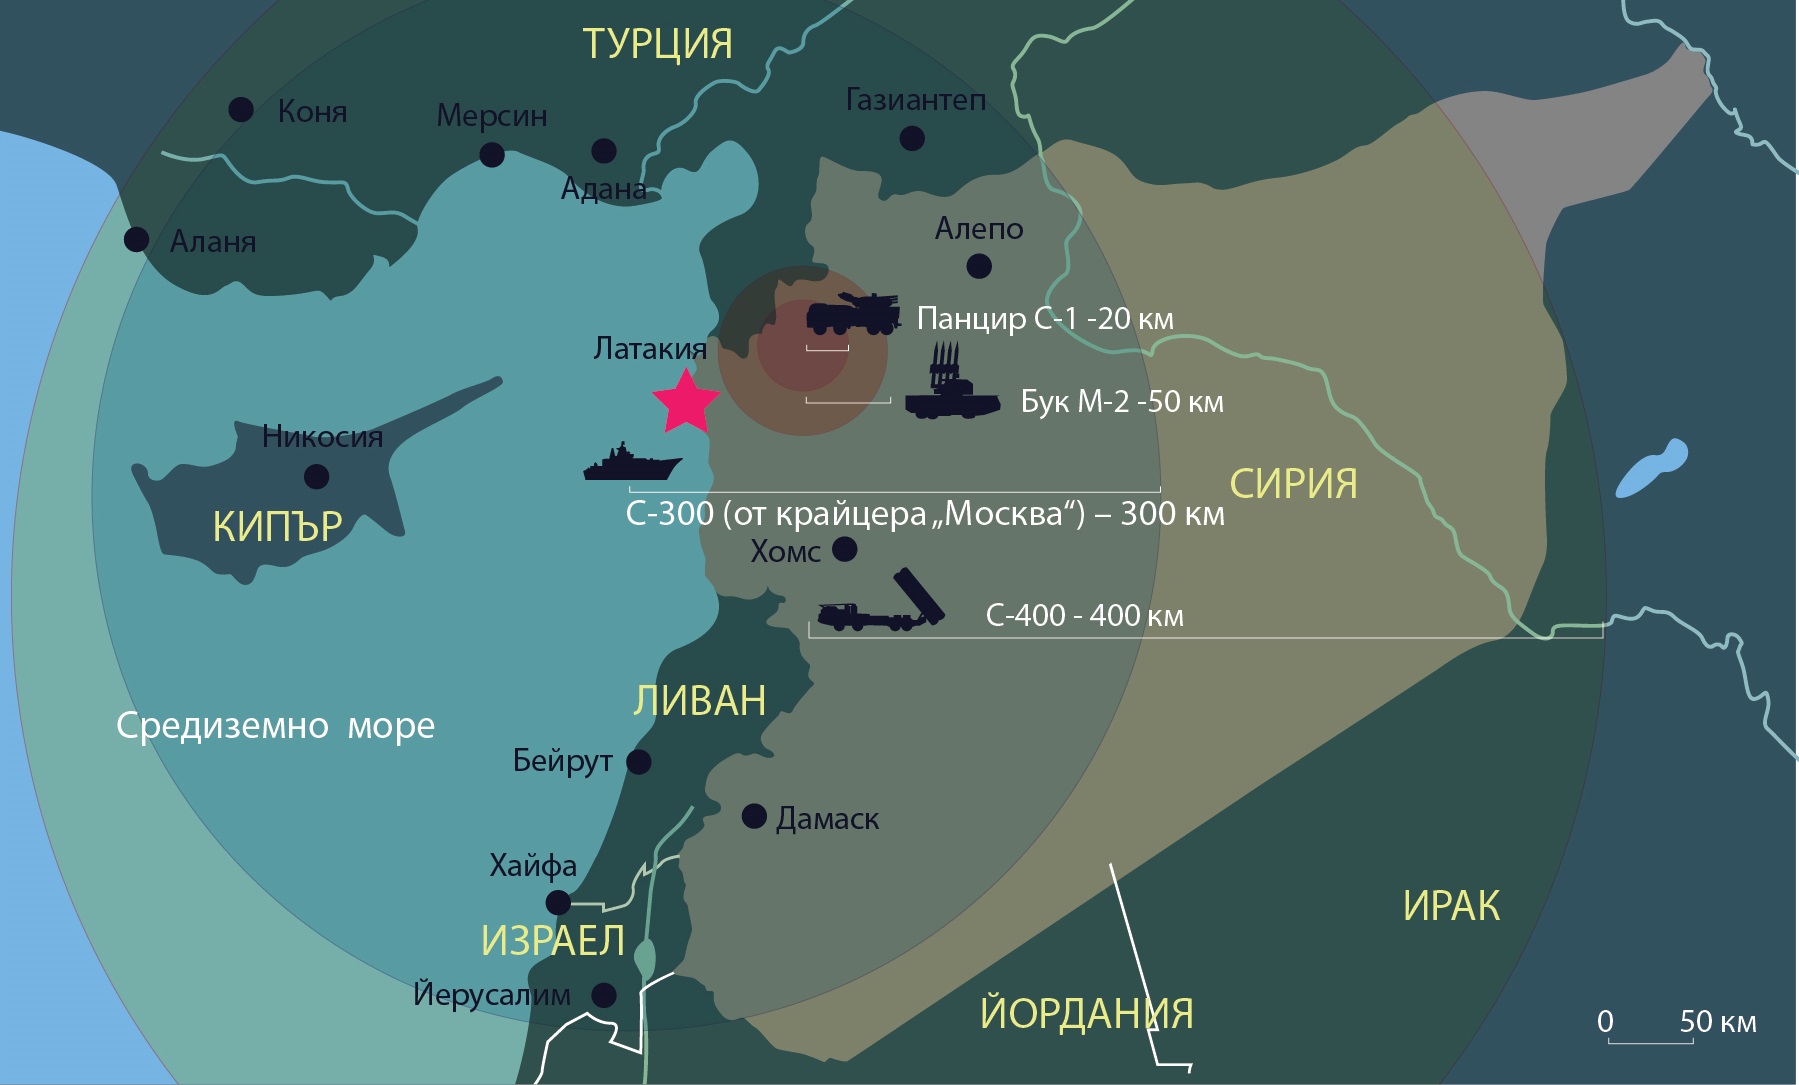 Зенитната ракетна система С-400 „Триумф“ е разположена в руската въздушна база „Хмеймим“ в Латакия, за да осигурява по-ефективна защита на района, където руските въздушни сили извършват авиоудари. Сега Русия има съвременна отбранителна система в Сирия, която функционира на разстояние от 20 до 400 км и на надморска височина от 3000 до 30 000 м. Тази инфографика на „Руски дневник“ показва как Русия гарантира сигурността на своите самолети в Сирия.